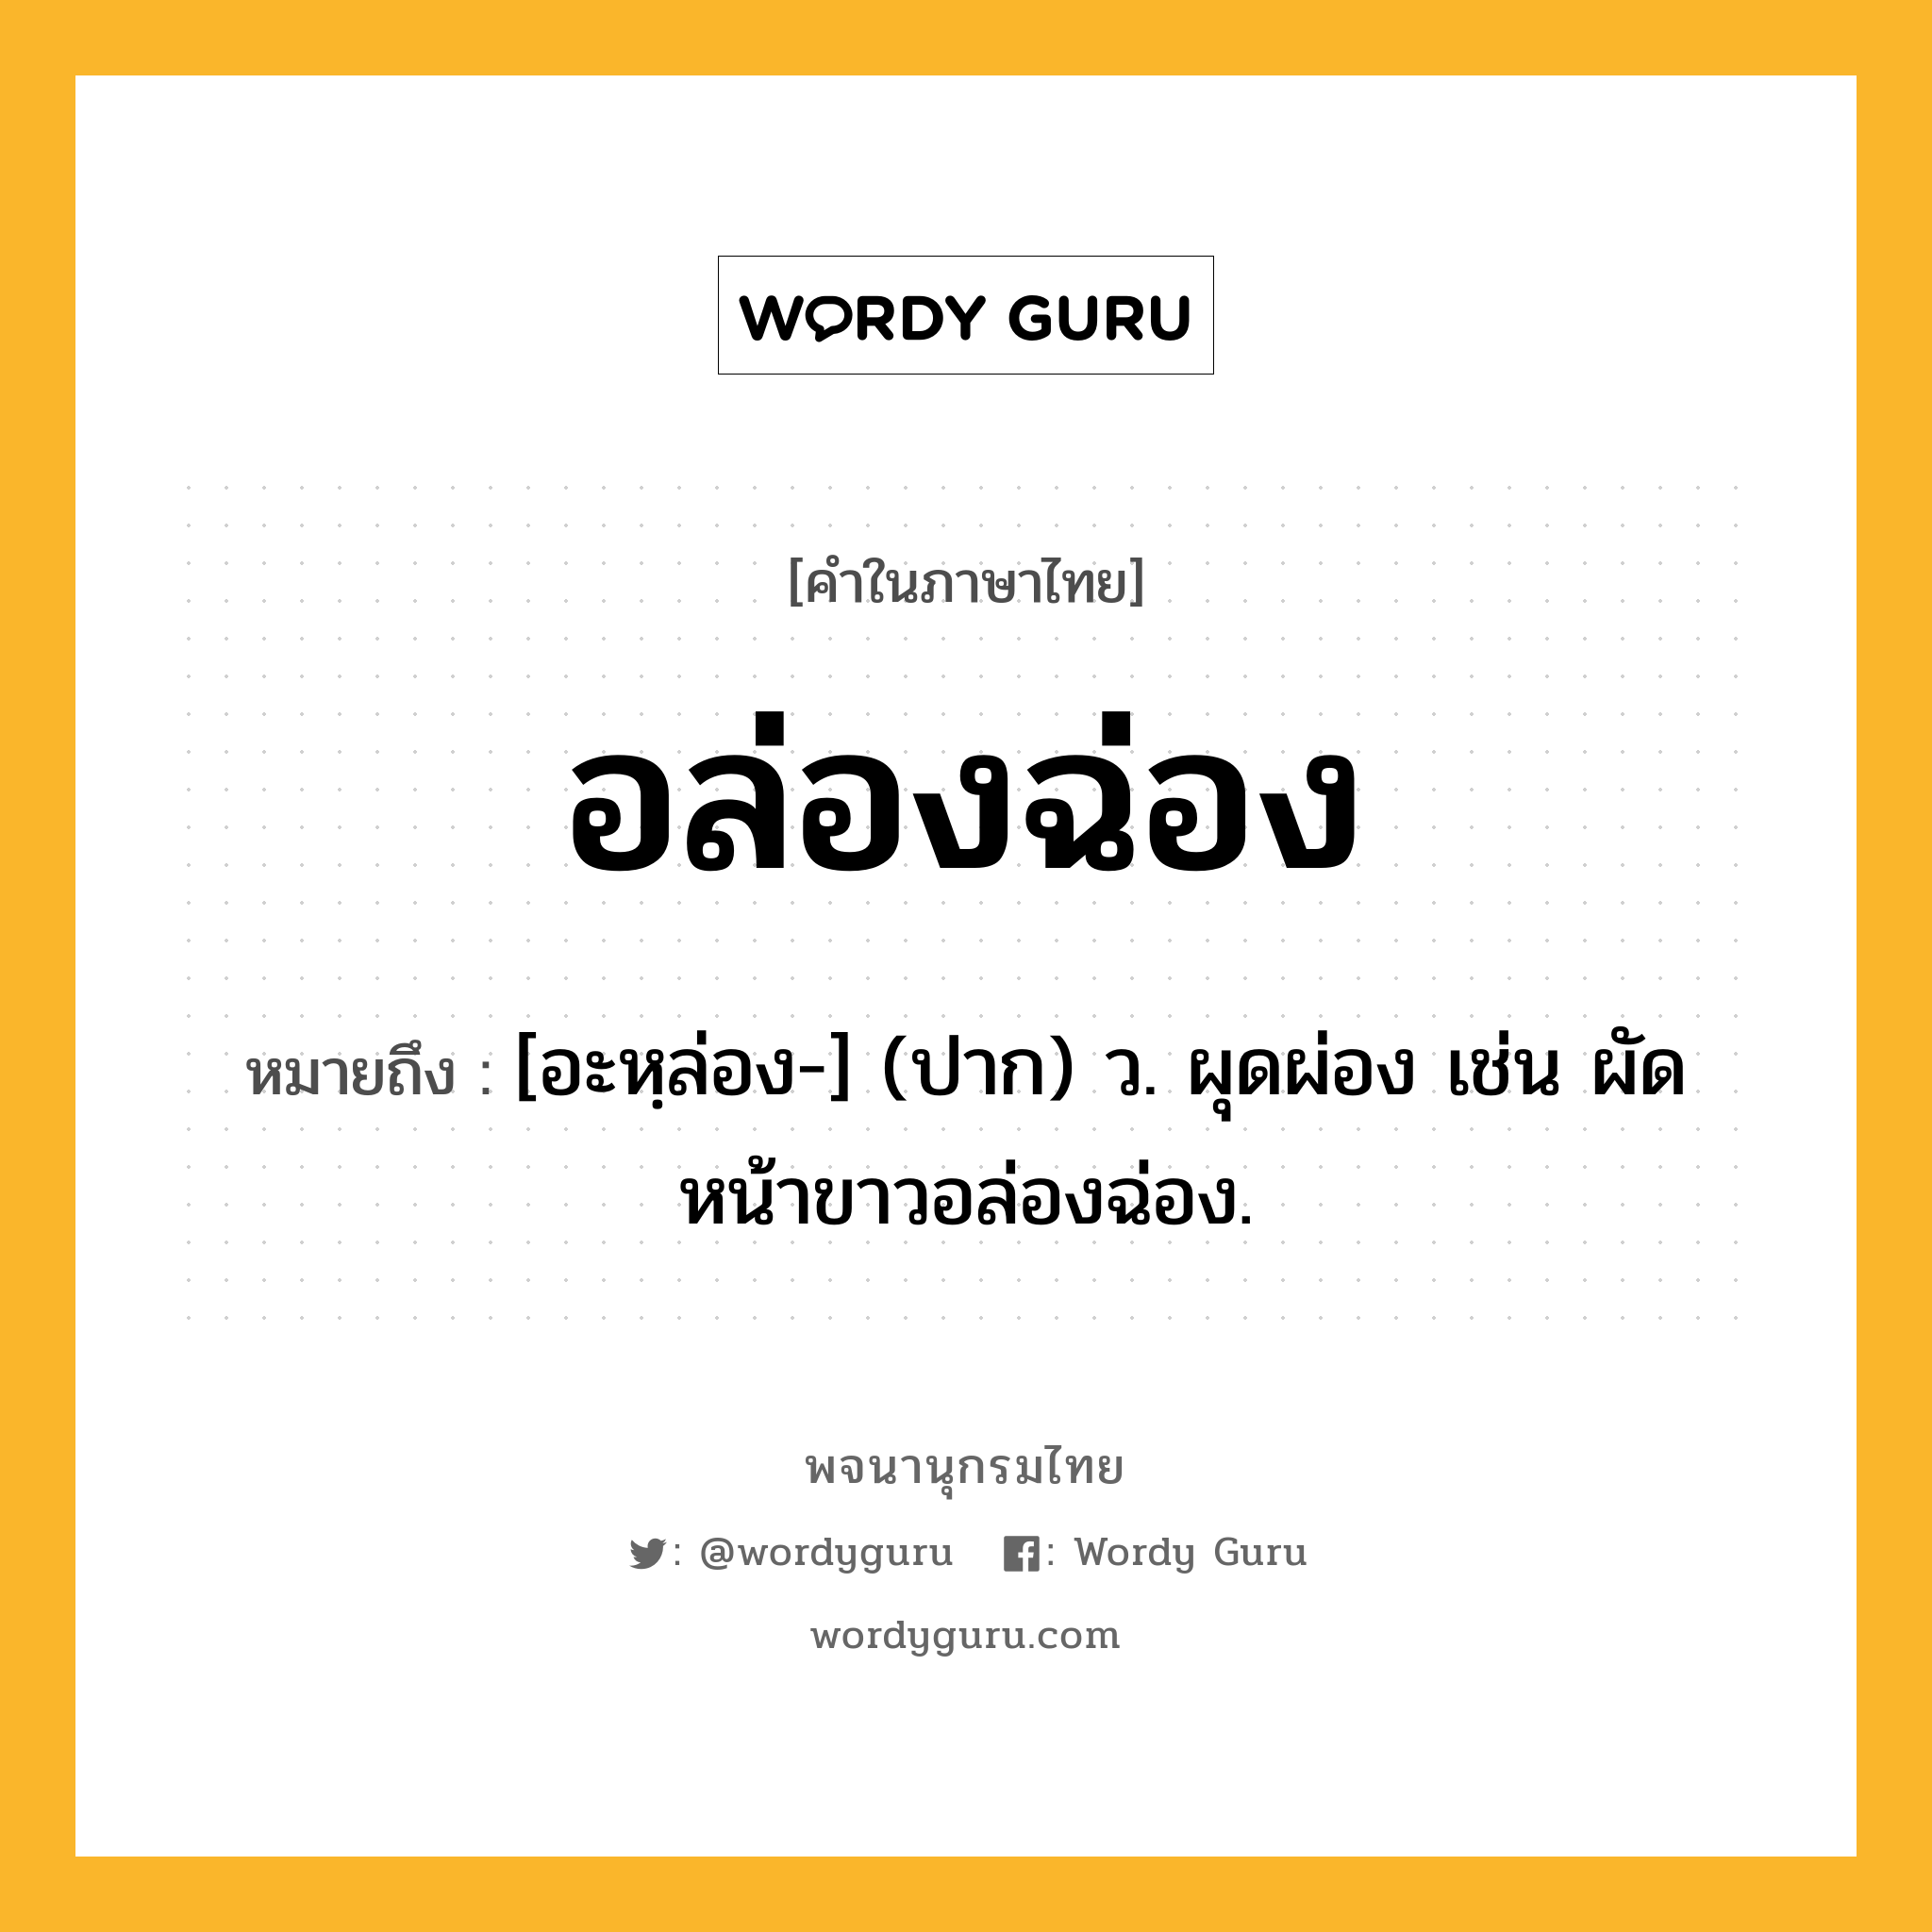 อล่องฉ่อง ความหมาย หมายถึงอะไร?, คำในภาษาไทย อล่องฉ่อง หมายถึง [อะหฺล่อง-] (ปาก) ว. ผุดผ่อง เช่น ผัดหน้าขาวอล่องฉ่อง.